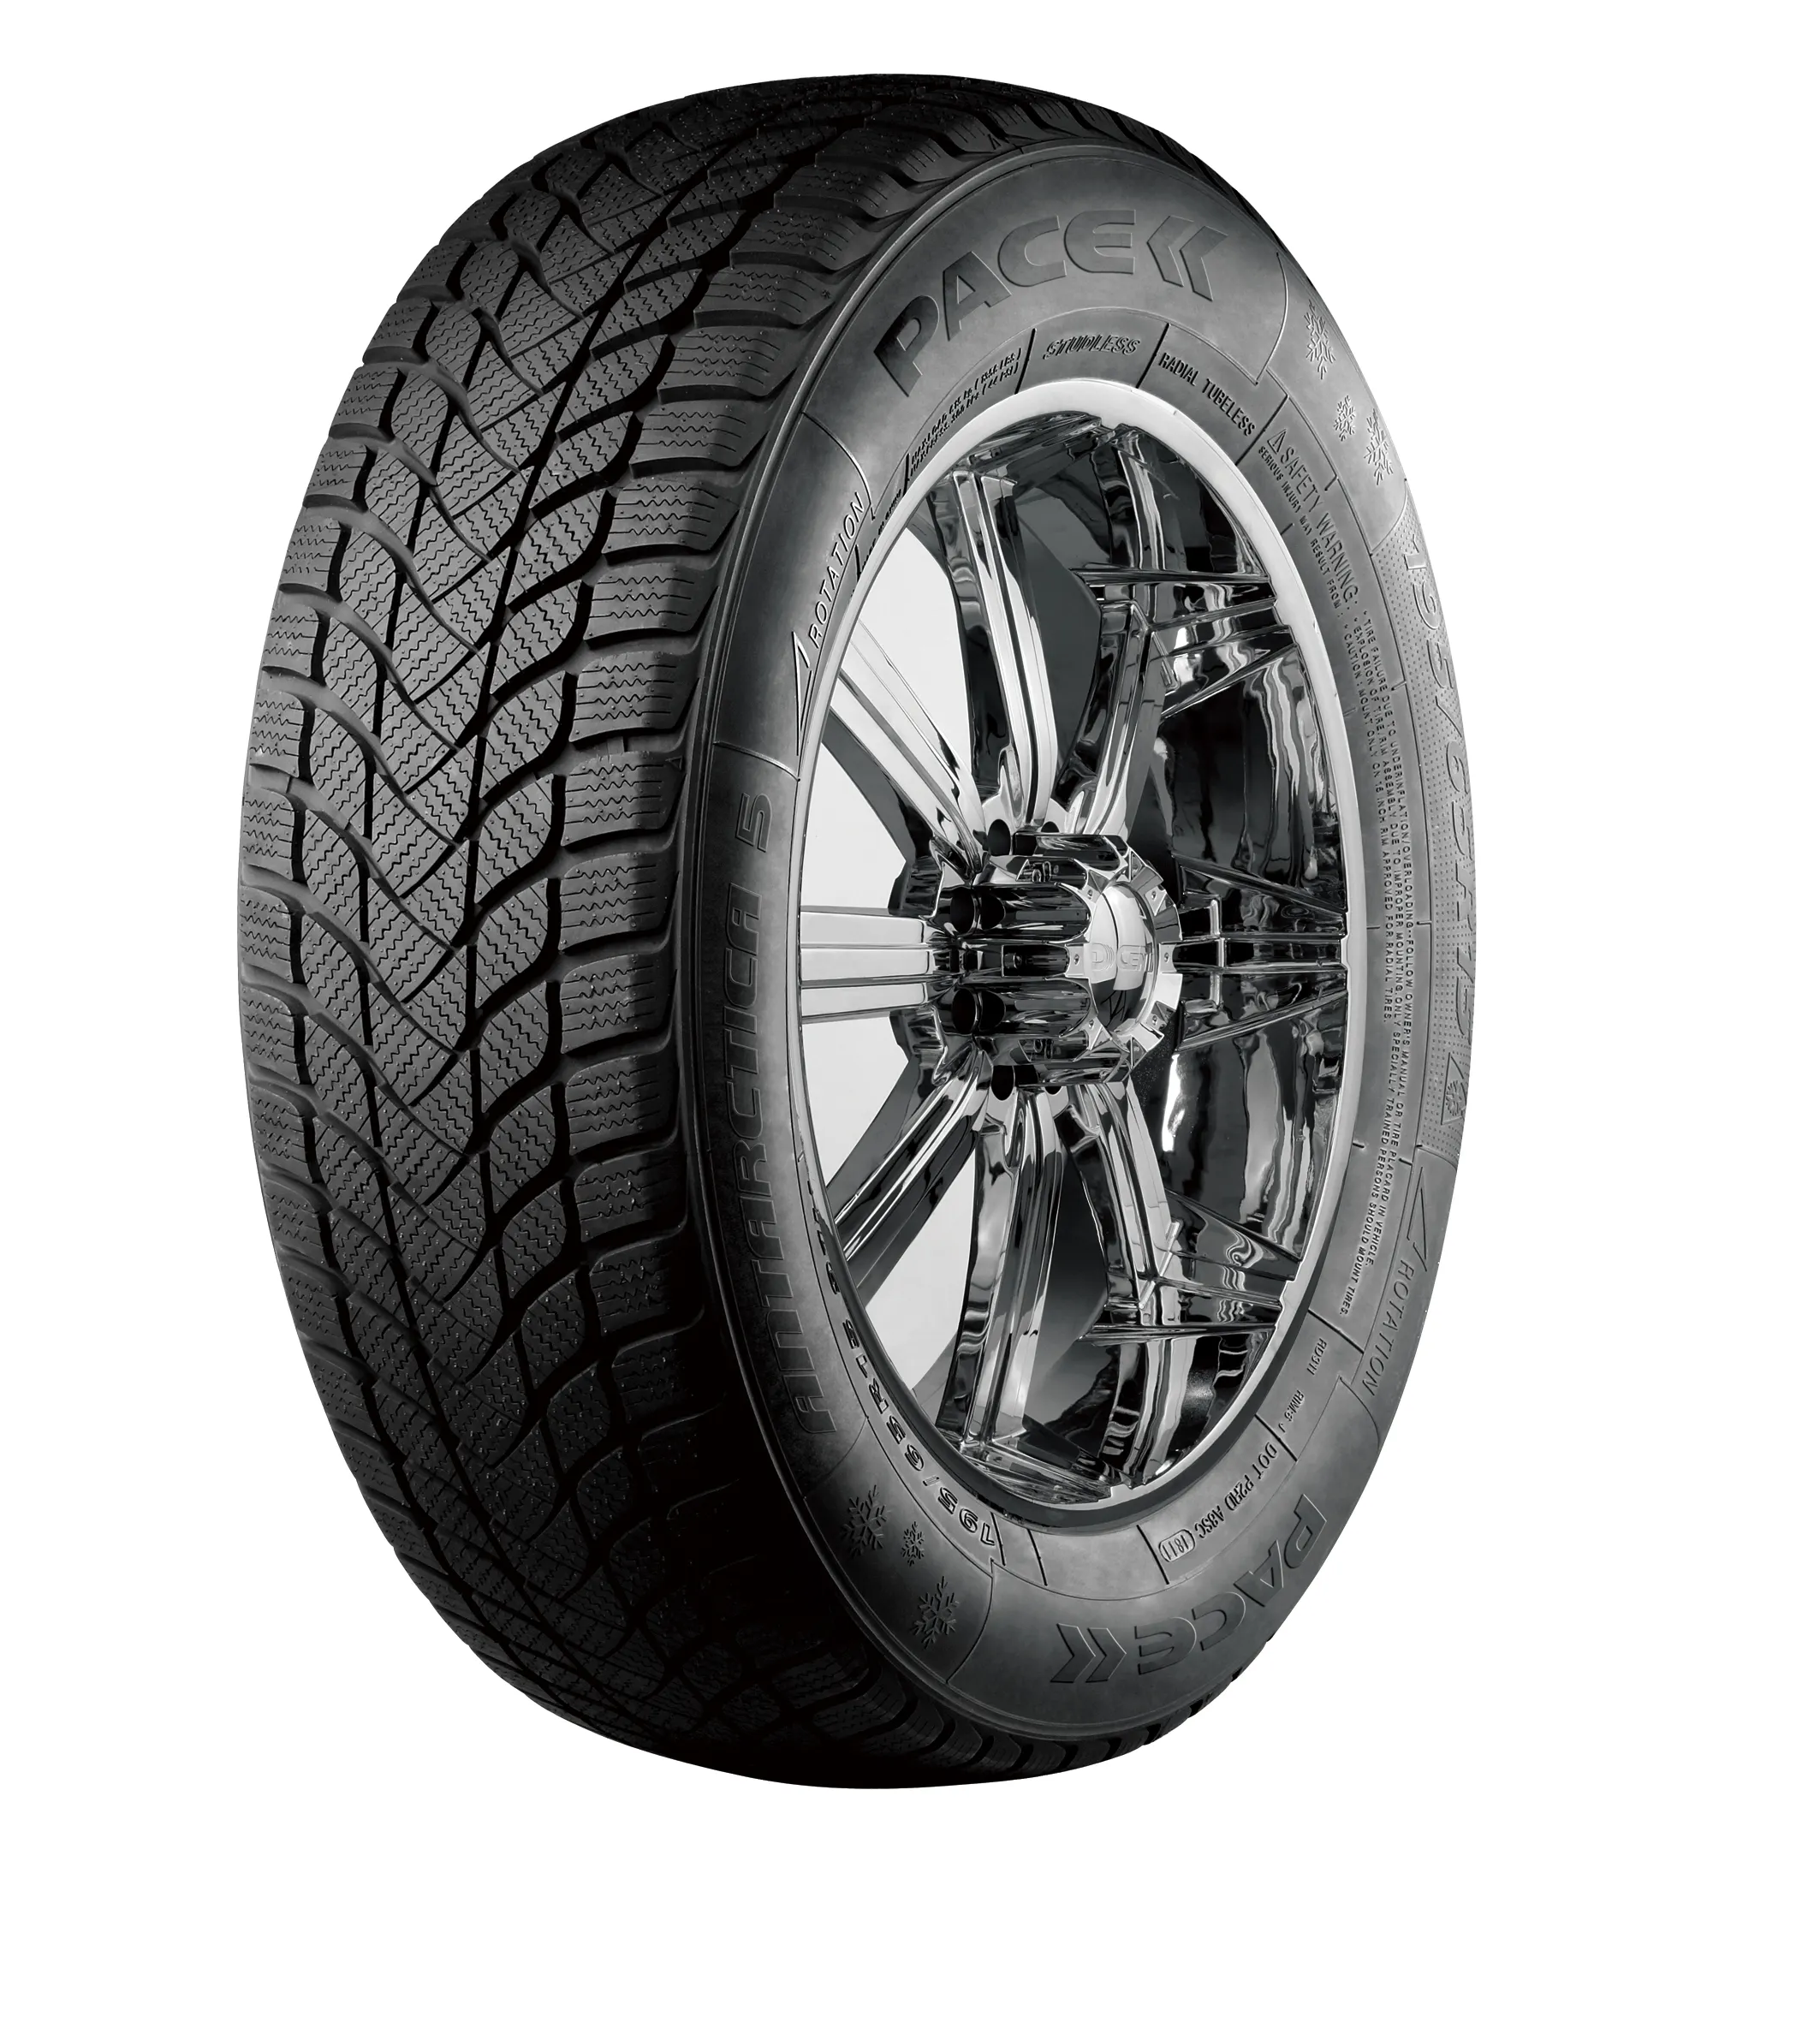 Tubeless pneus d'hiver pneus pour voiture 195 55 16 195/55/16 195 55r16